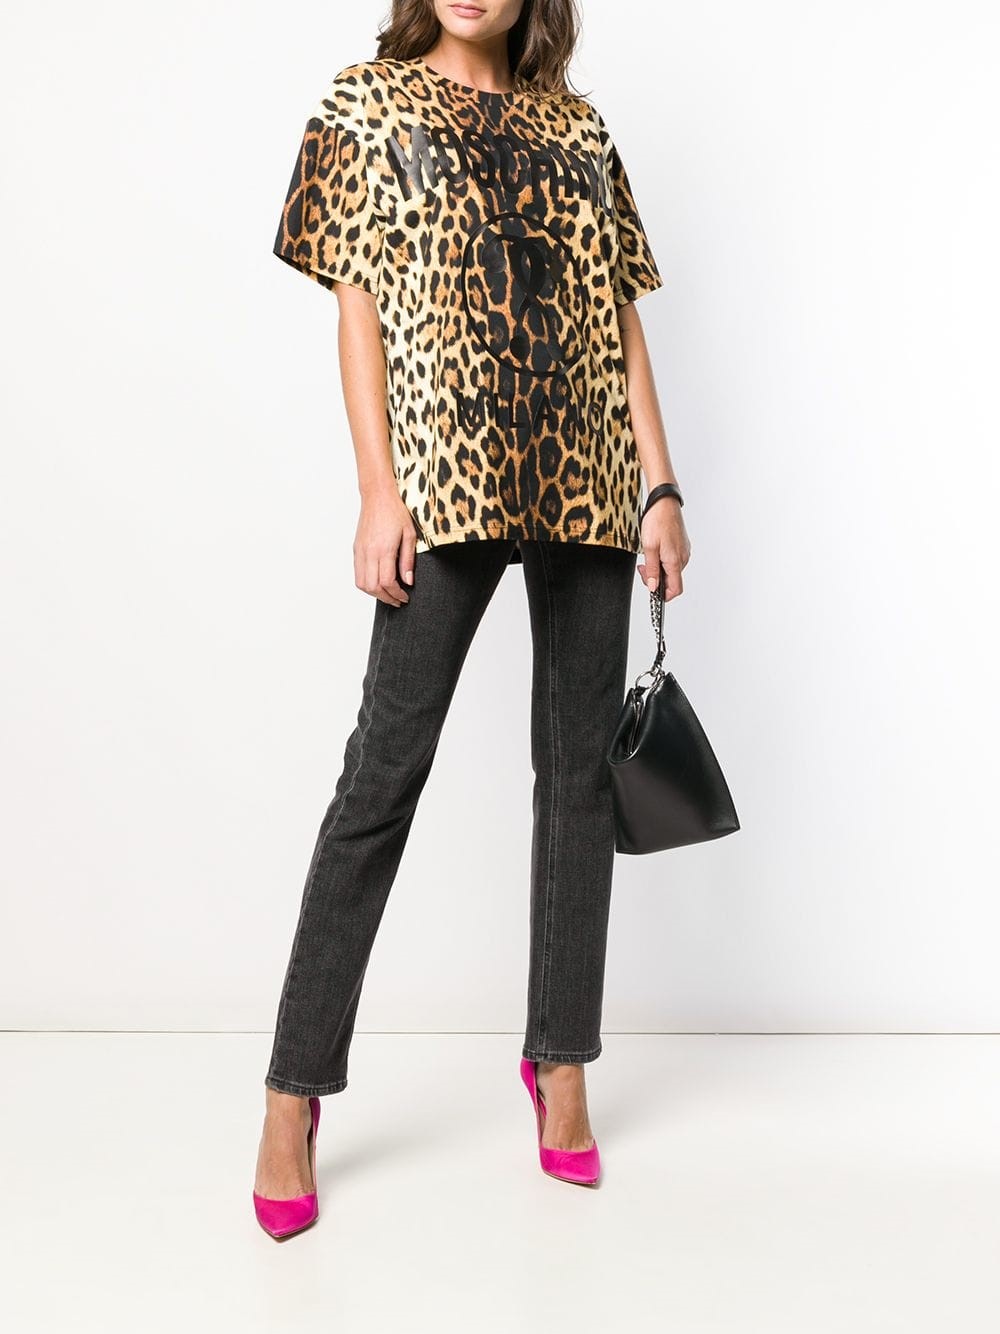 moschino leopard t shirt